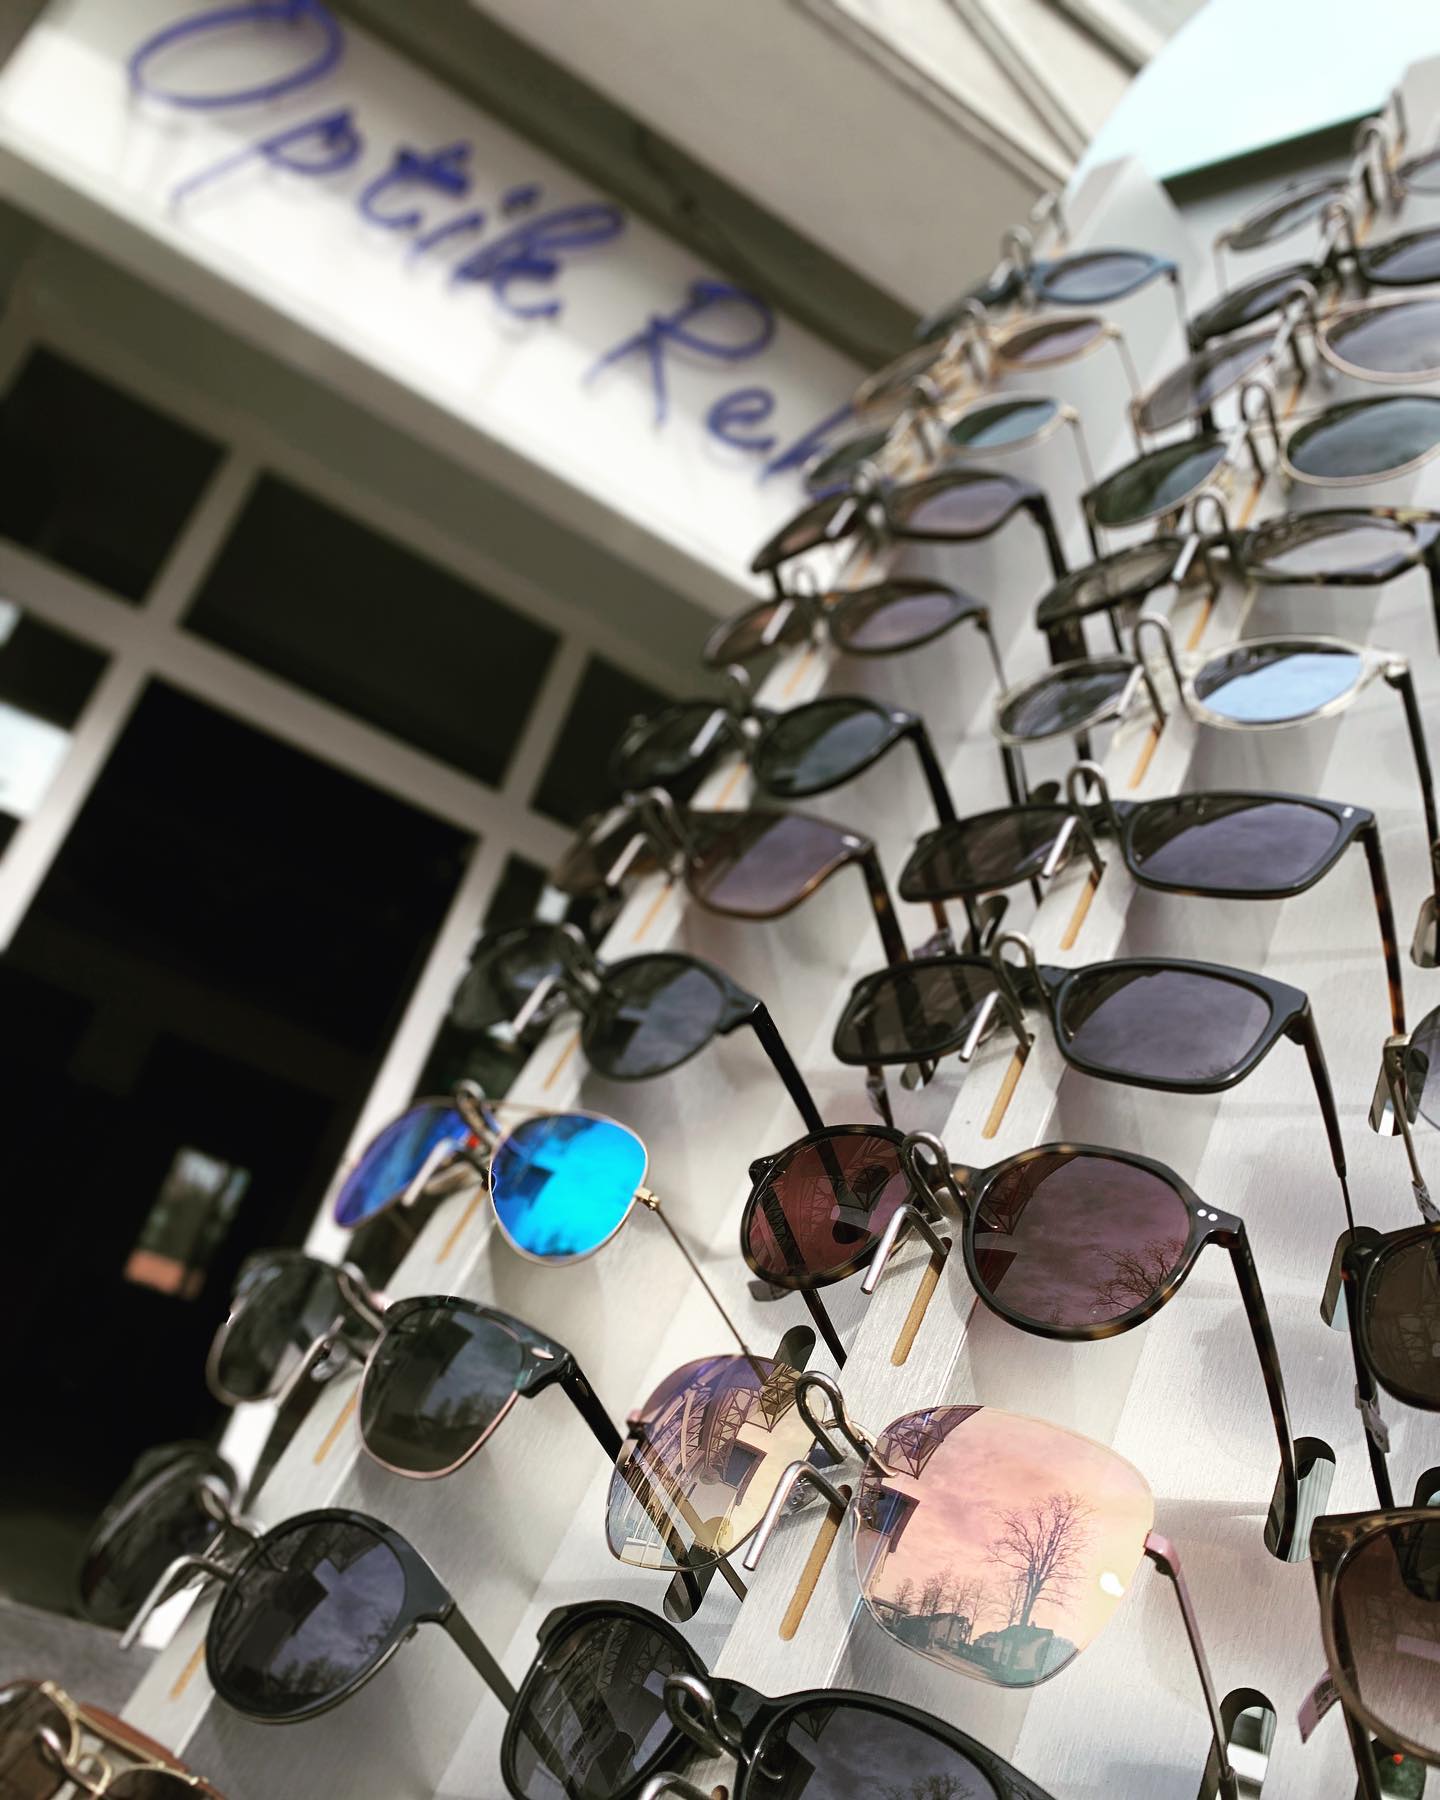 Ab heute haben wir wieder eine tolle Sonnenbrillenglas-Aktion für euch ! ☀️

Kommt gerne vorbei 😎

#optikrehm #augustdorf #sonnenbrillenwetter #sonnenbrillenaktion #sommersonnesonnenschein